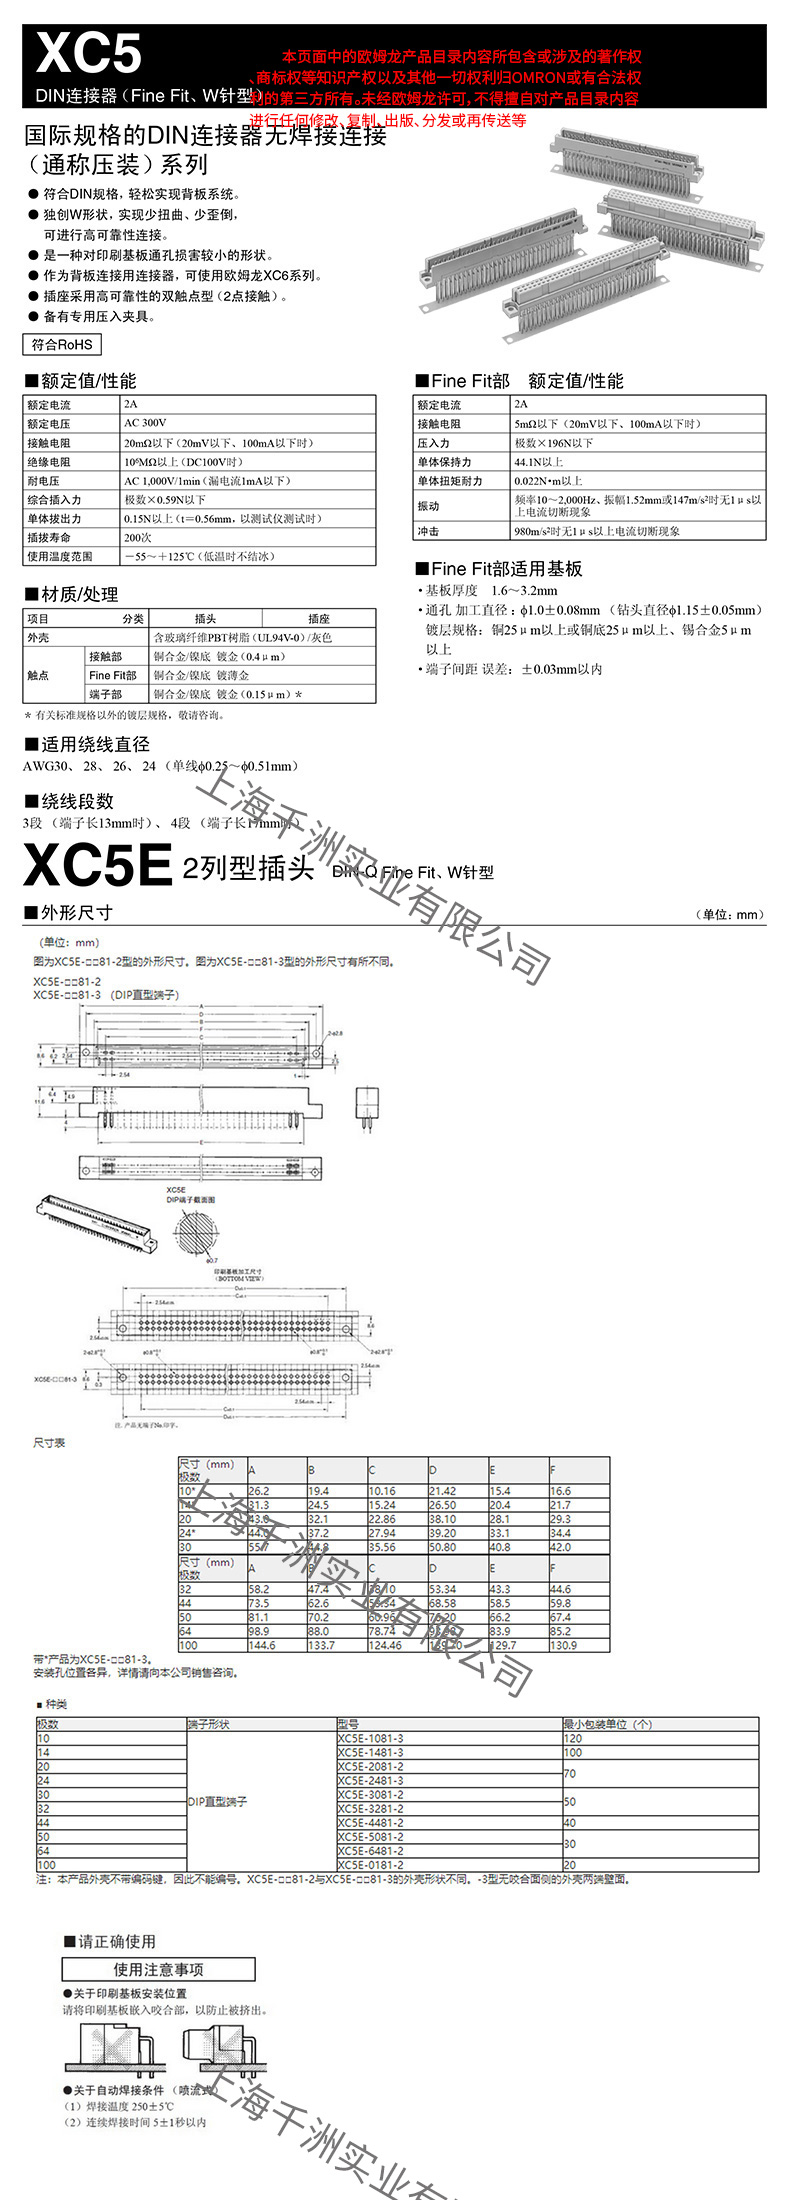 XC5E参数详情